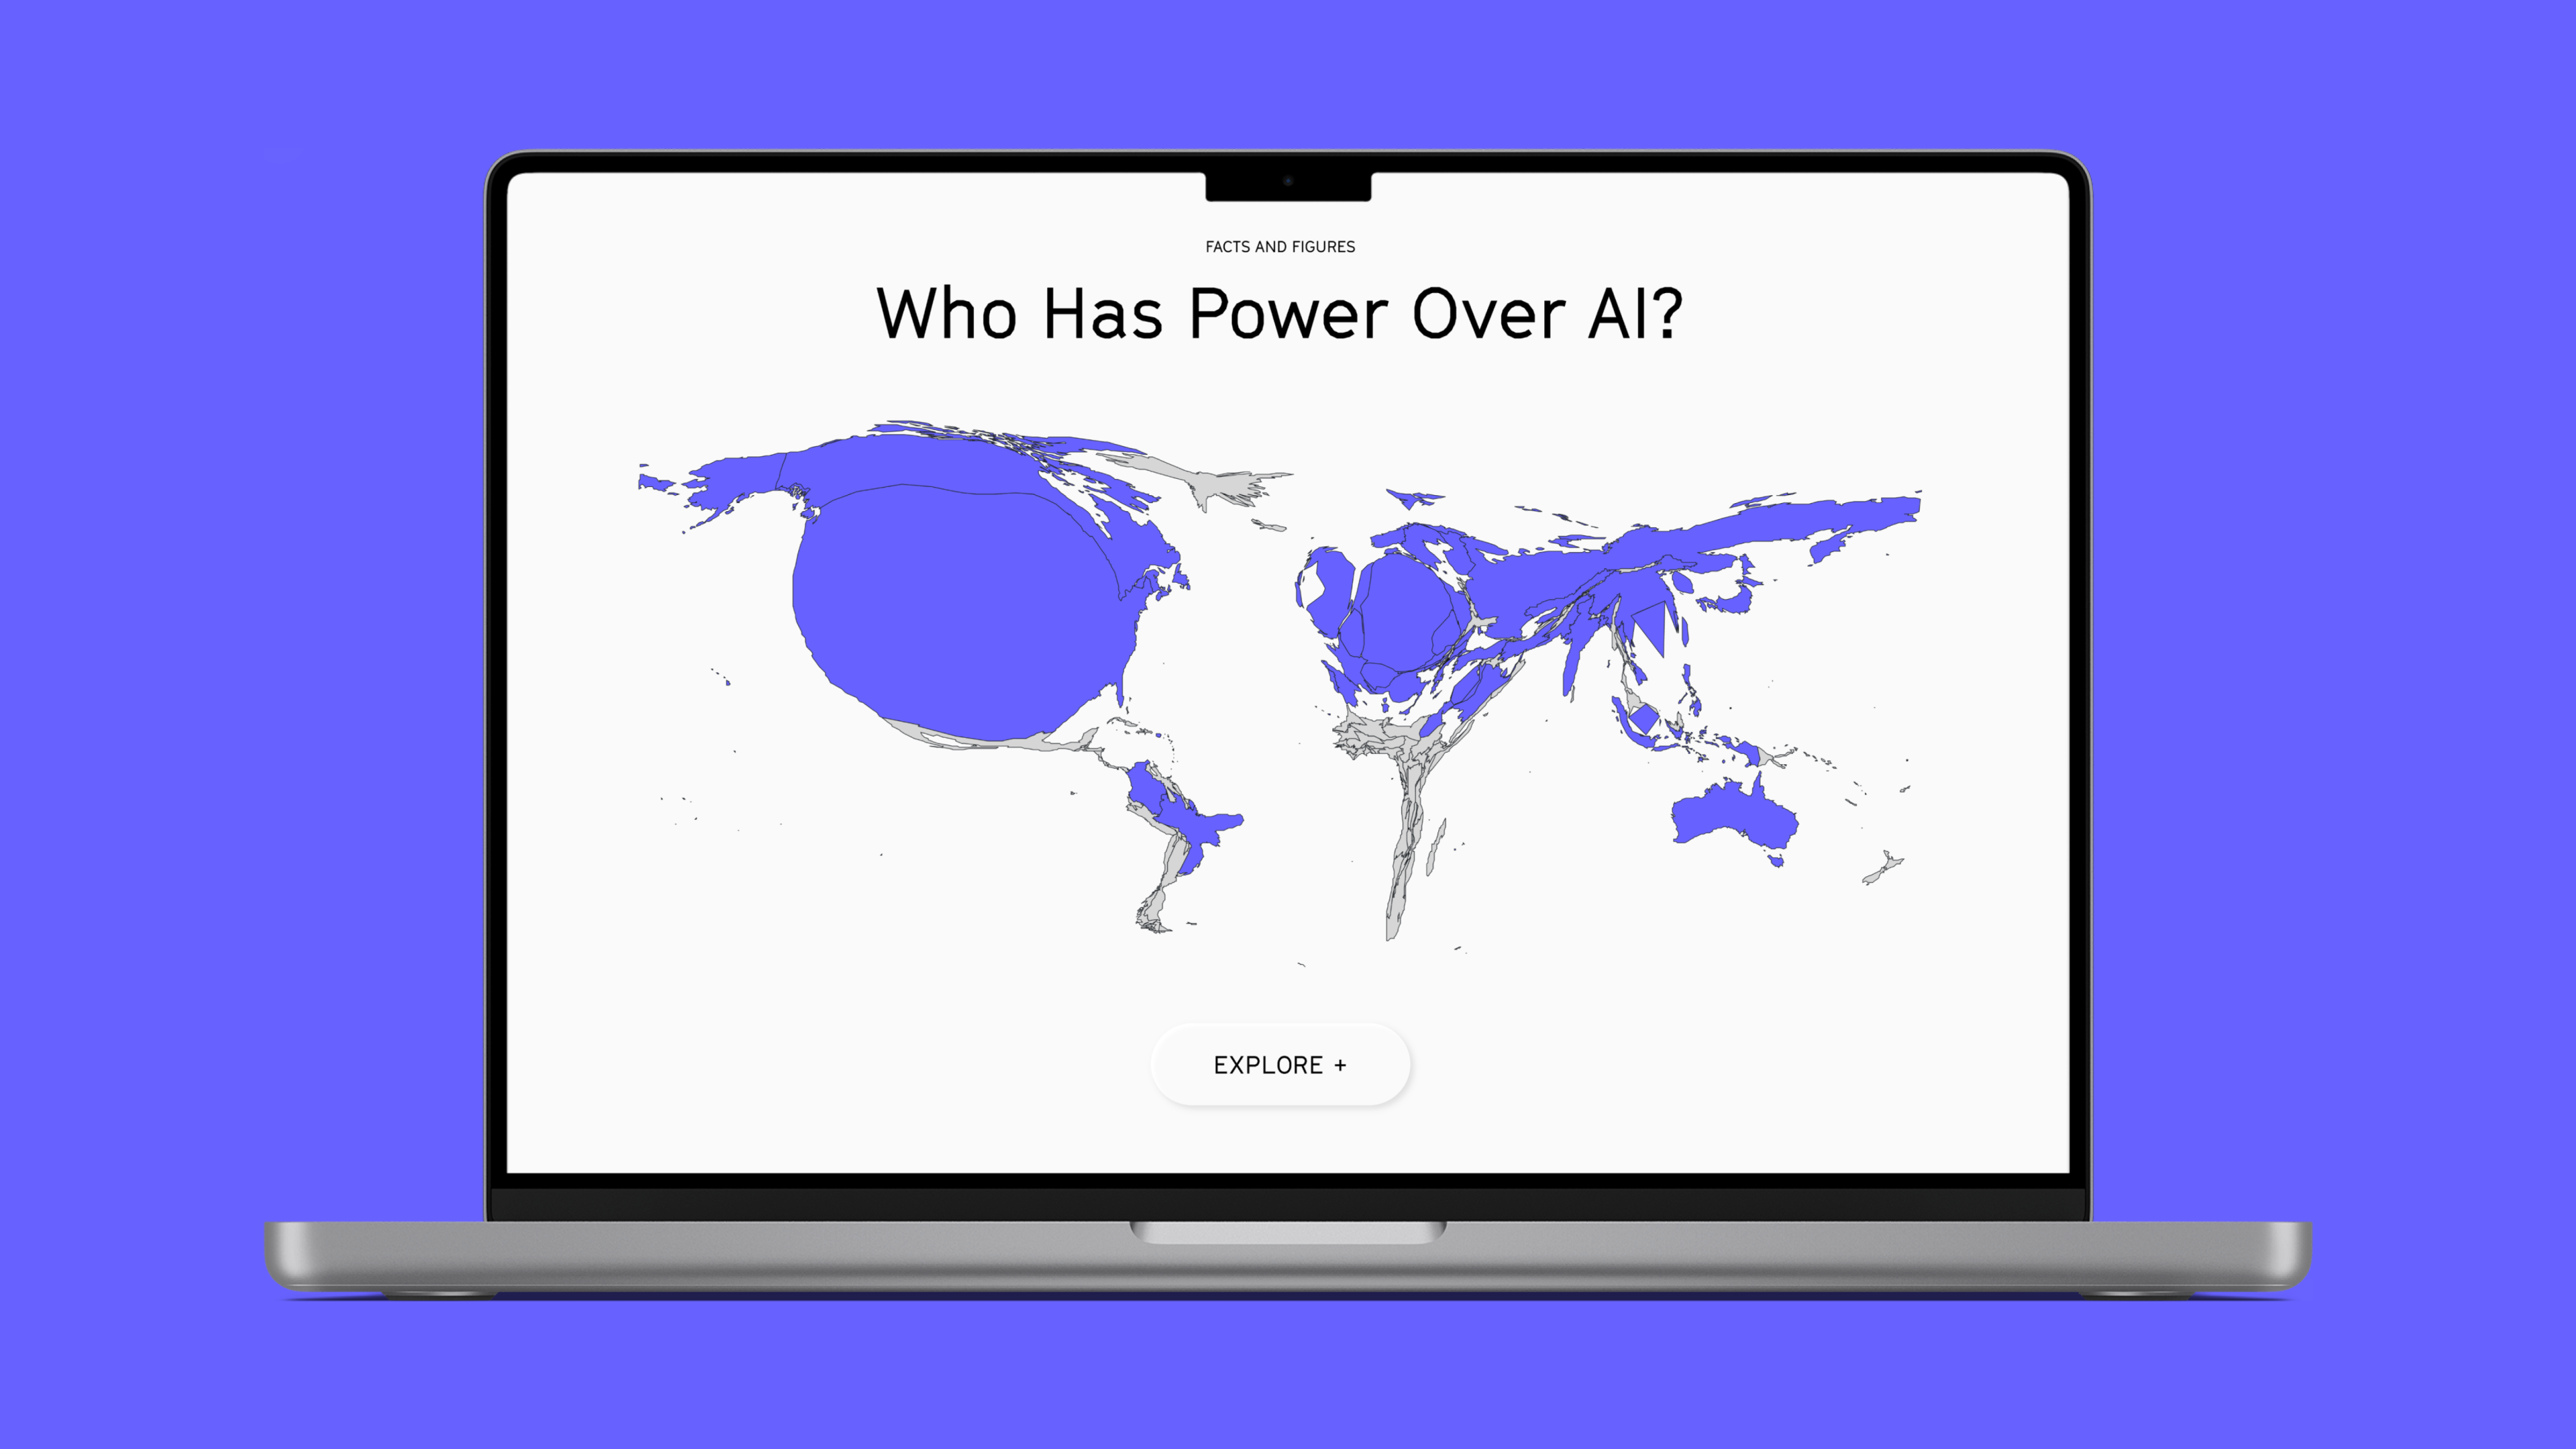 Eine farbkodierte Weltkarte mit dem Titel "Häufigkeit der Nutzung von Datensätzen nach Ländern". Bei der Karte handelt es sich um ein Kartogramm, d. h. die Länder sind in ihrer Größe verzerrt, um die Häufigkeit der Nutzung von Datensätzen in diesen Ländern widerzuspiegeln.